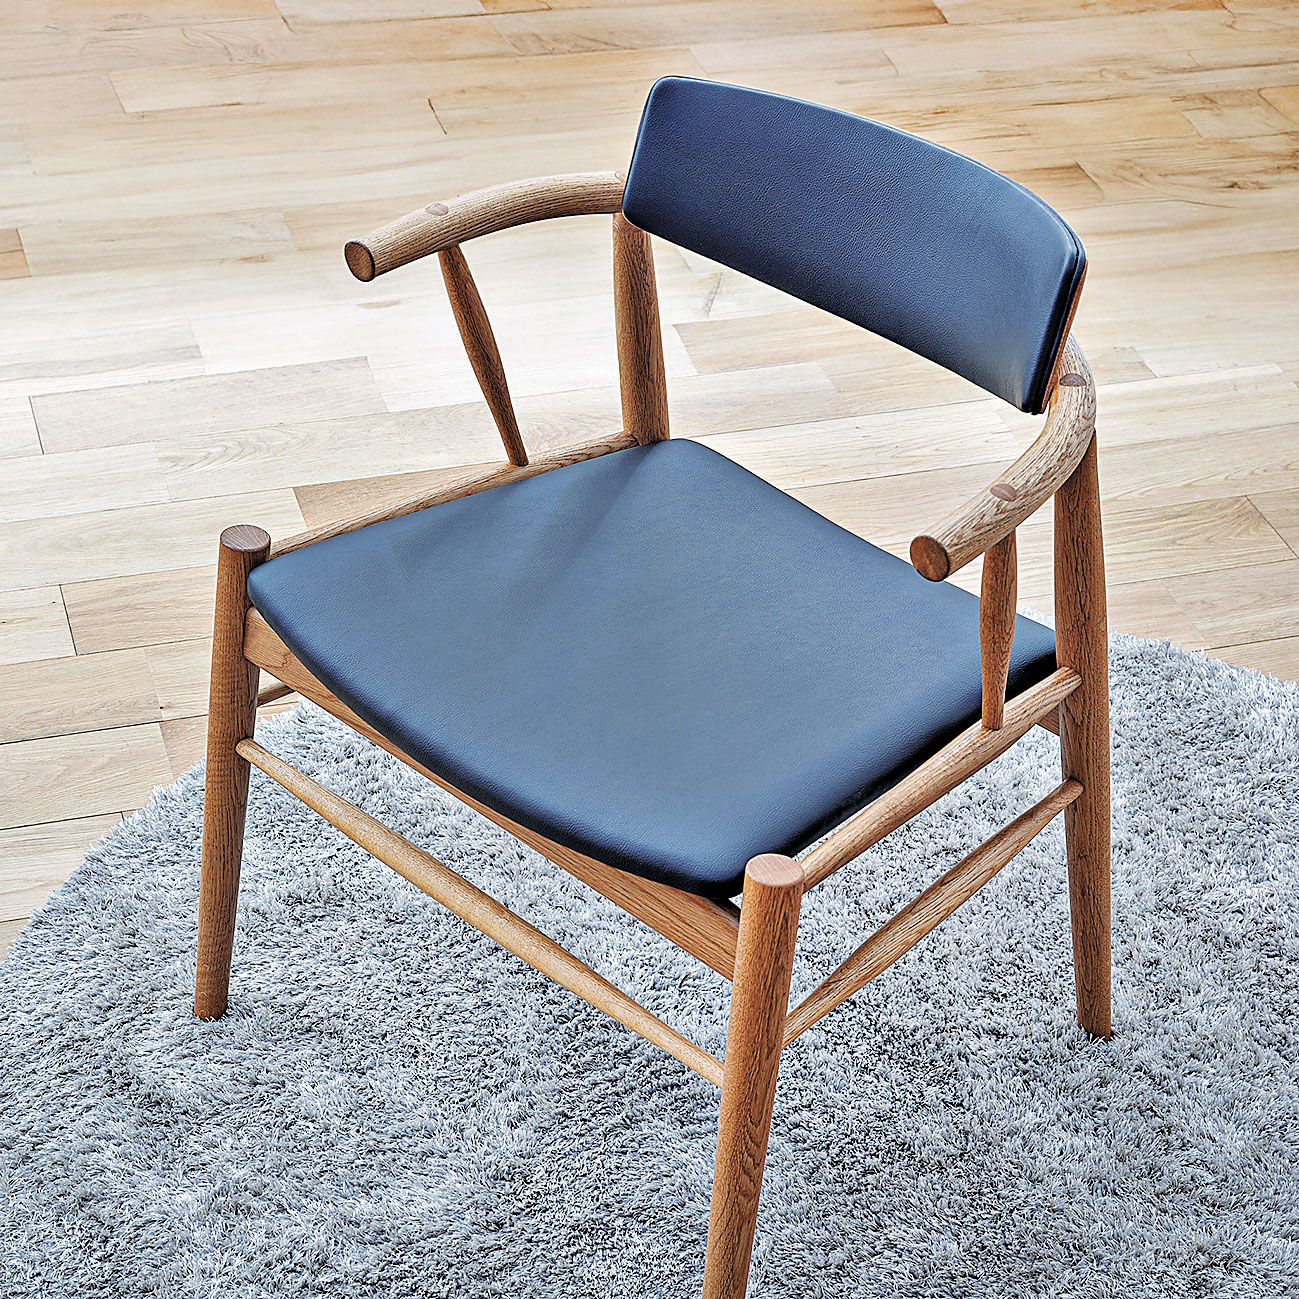 ■椅子的入榫位，全部沿用原始的接木方式拼合。